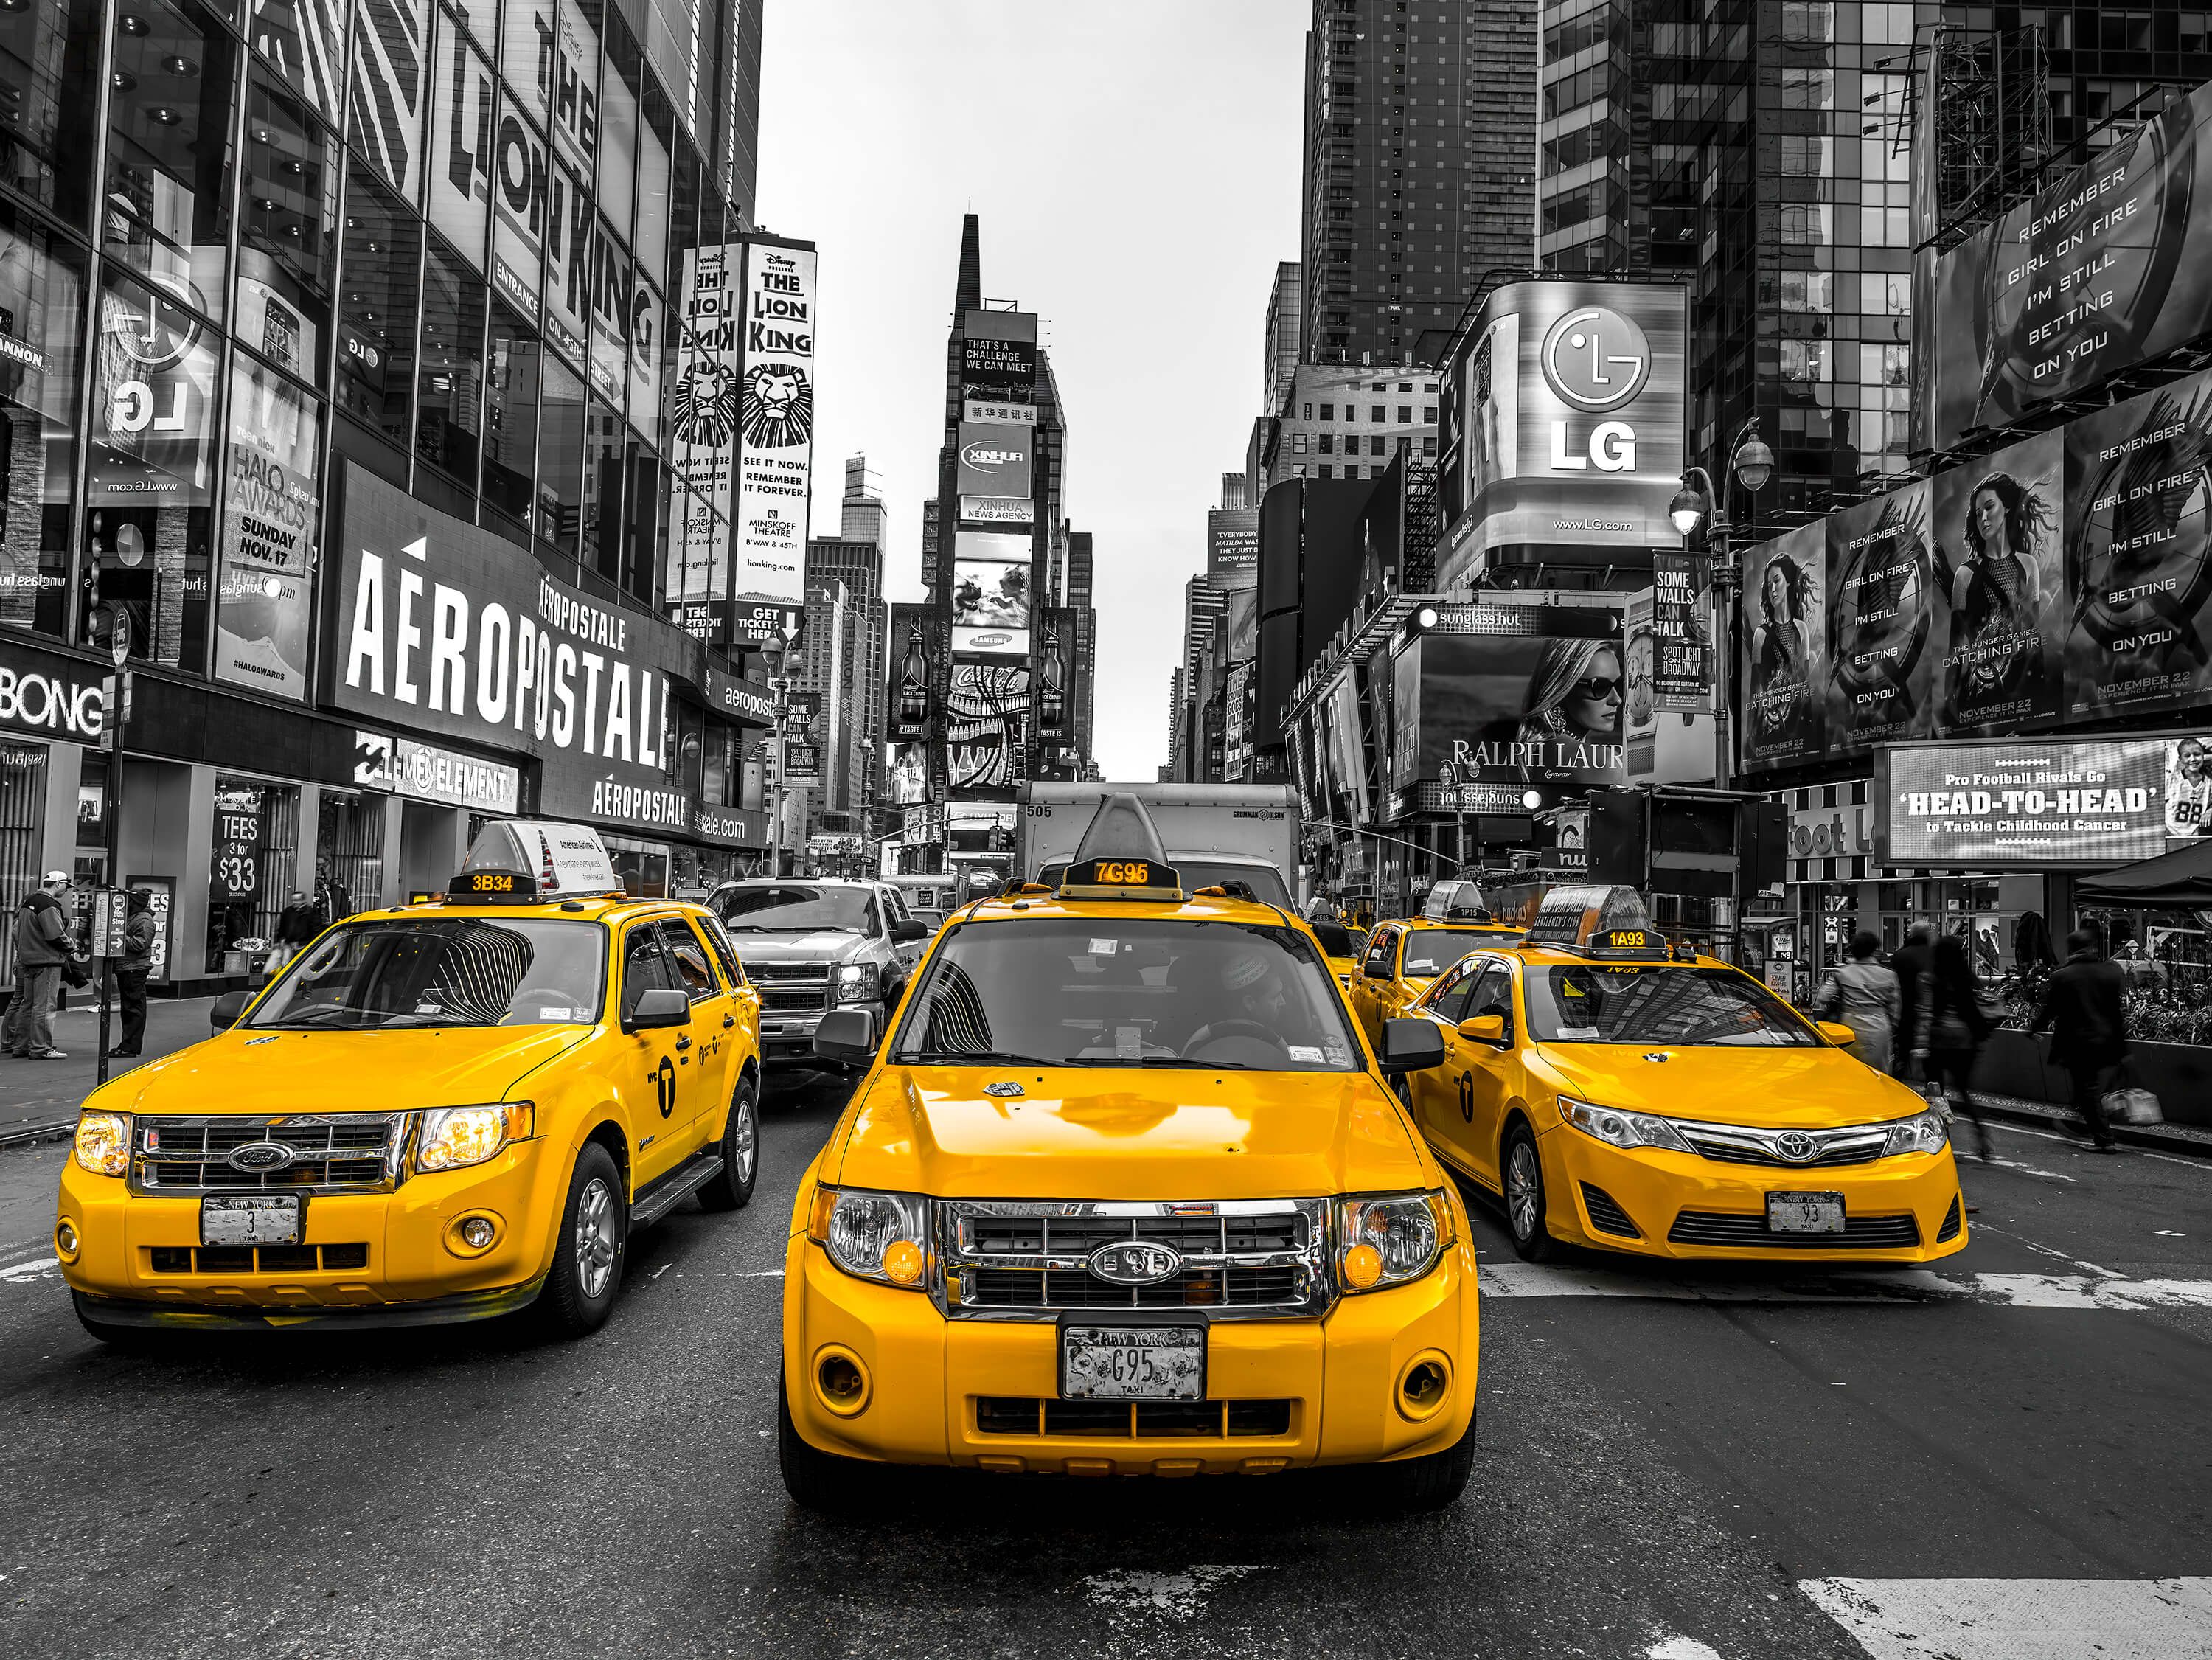  Papel pintado con Taxi en Broadway - Habitación de adolescentes